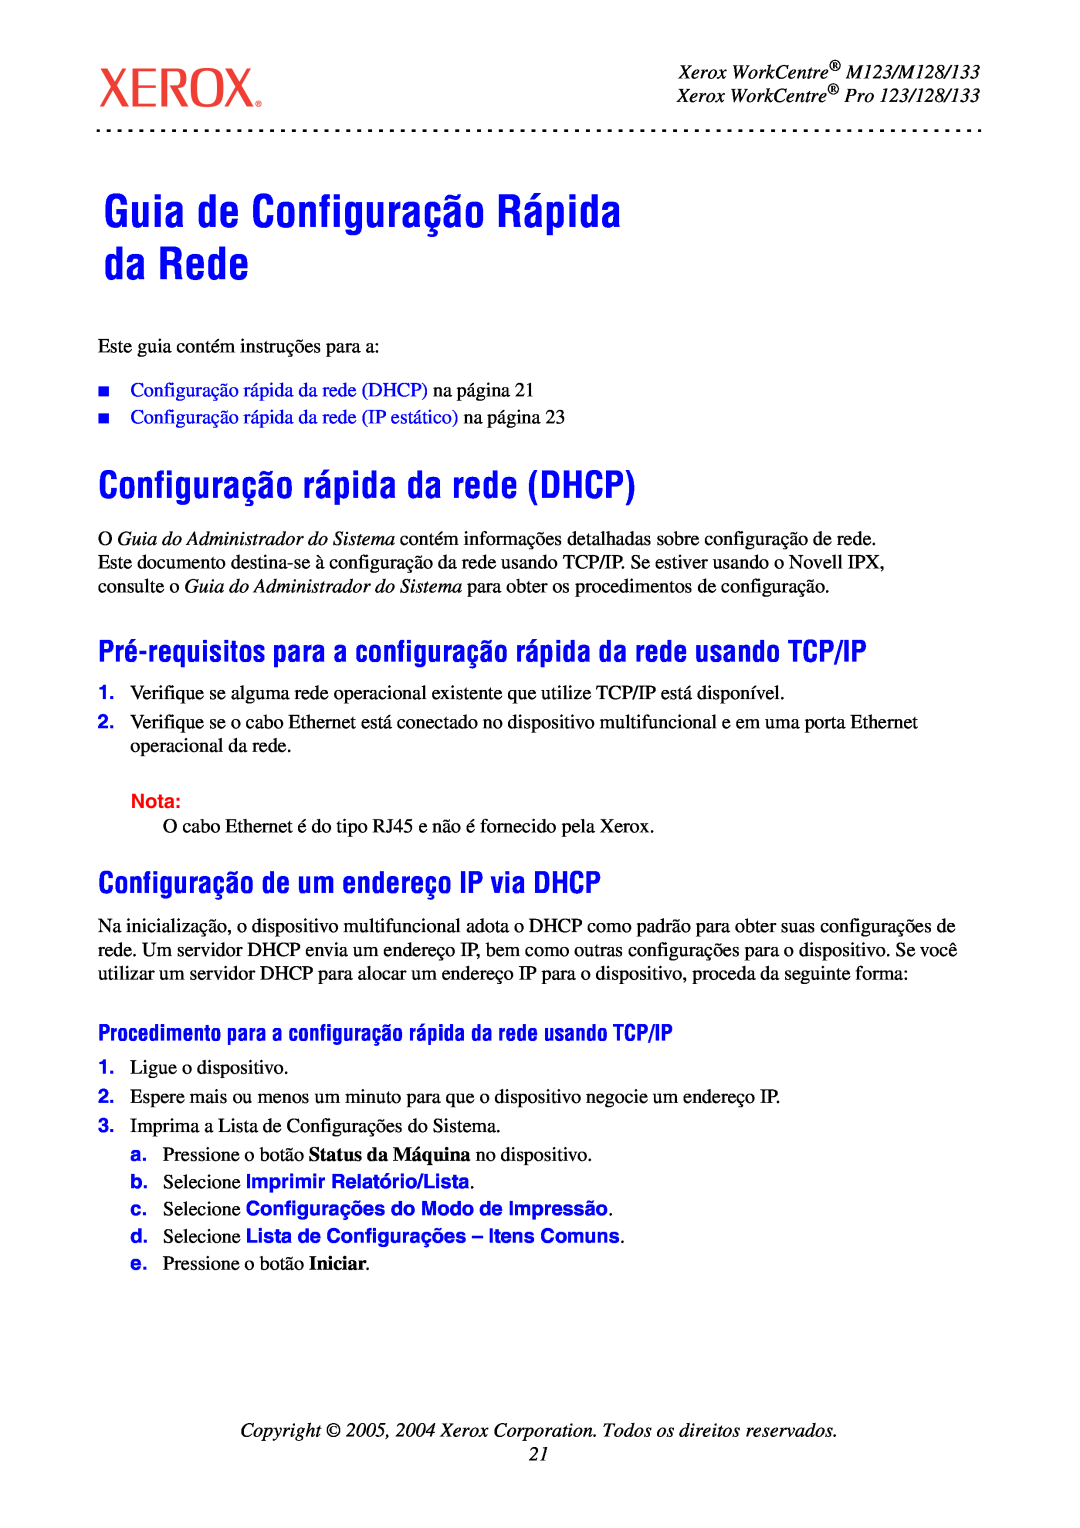 Xerox manual Guia de Configuração Rápida da Rede, Configuração rápida da rede DHCP, Xerox WorkCentre M123/M128/133, Nota 